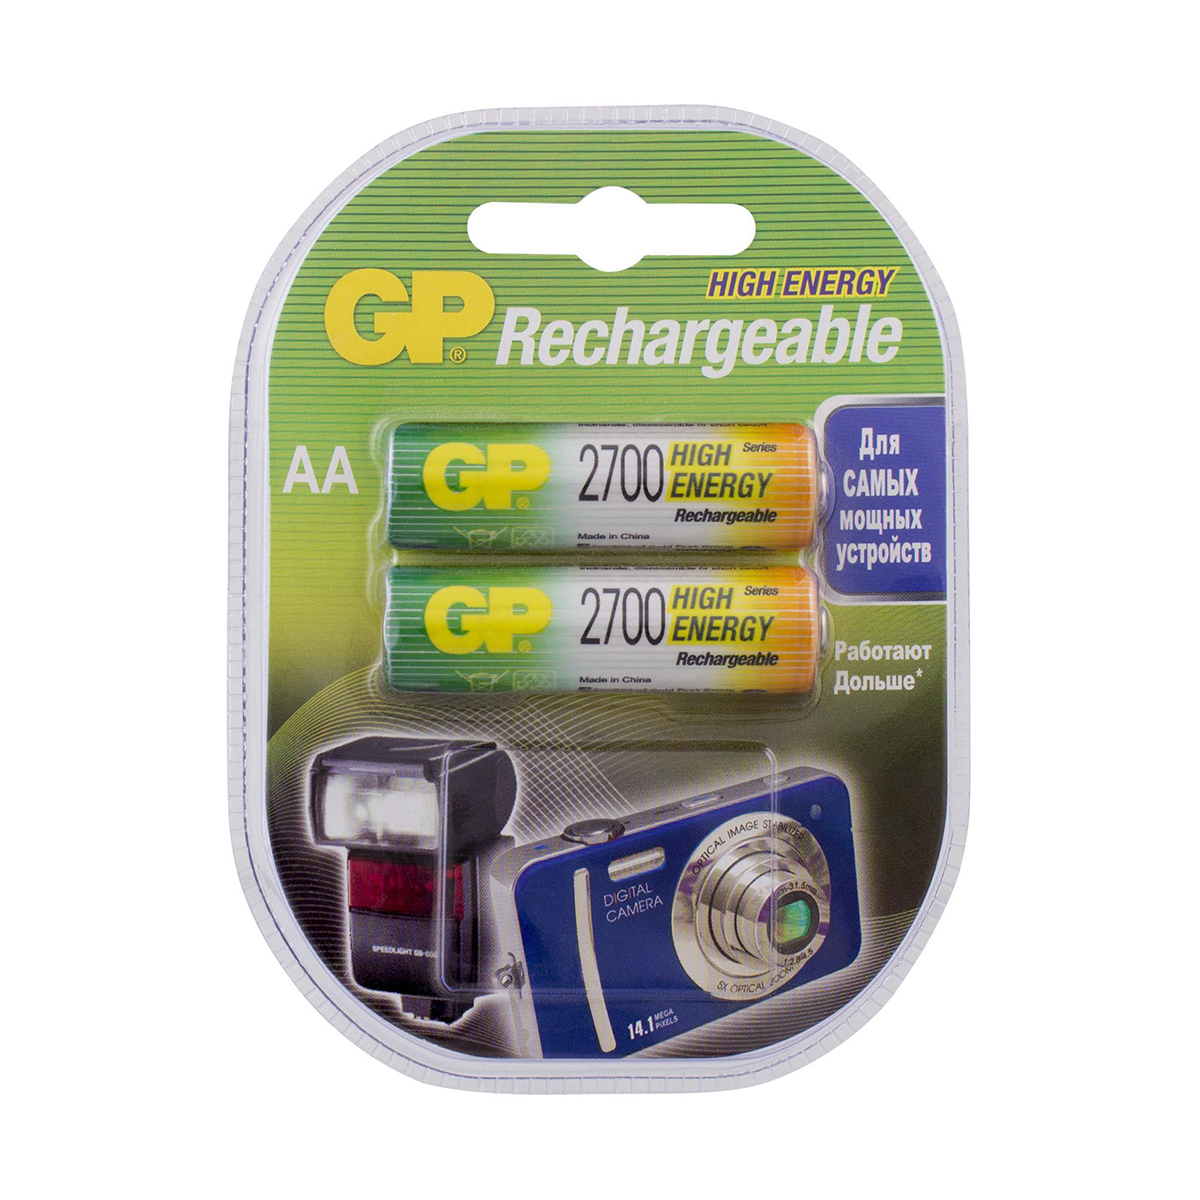 Аккумулятор gp rechargeable 270aahc-2decrc2  тип аа, 2700 мач (2 шт. в блистере) (1/10/100)